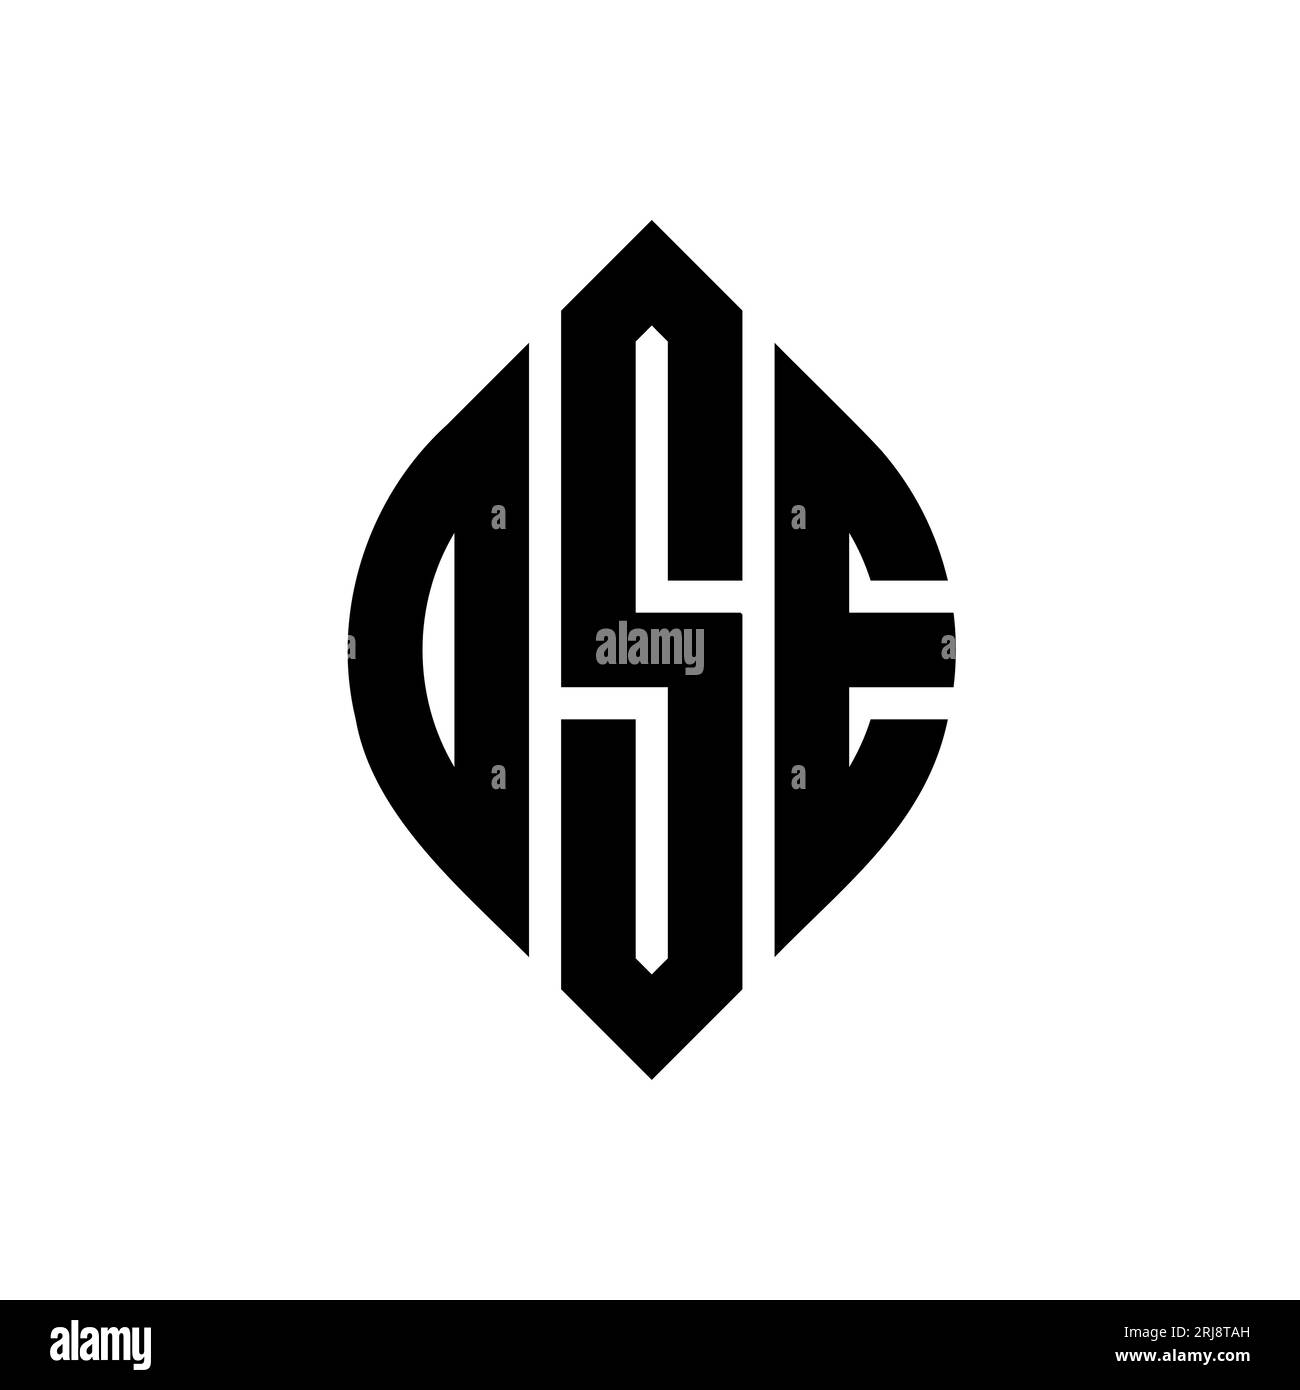 DSE-Logo mit kreisförmigem Buchstaben und Ellipsenform. DSE-Ellipsenbuchstaben im typografischen Stil. Die drei Initialen bilden ein kreisförmiges Logo. DSE-CI Stock Vektor